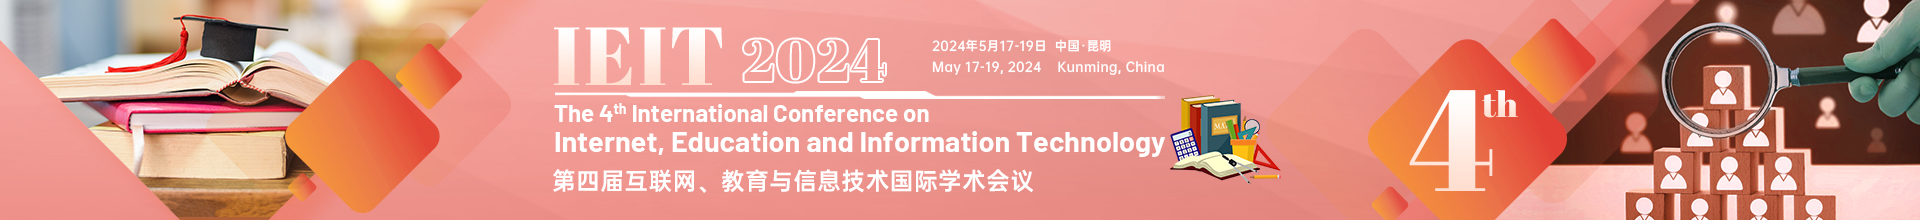 5月昆明-IEIT-2024-学术会议云.jpg